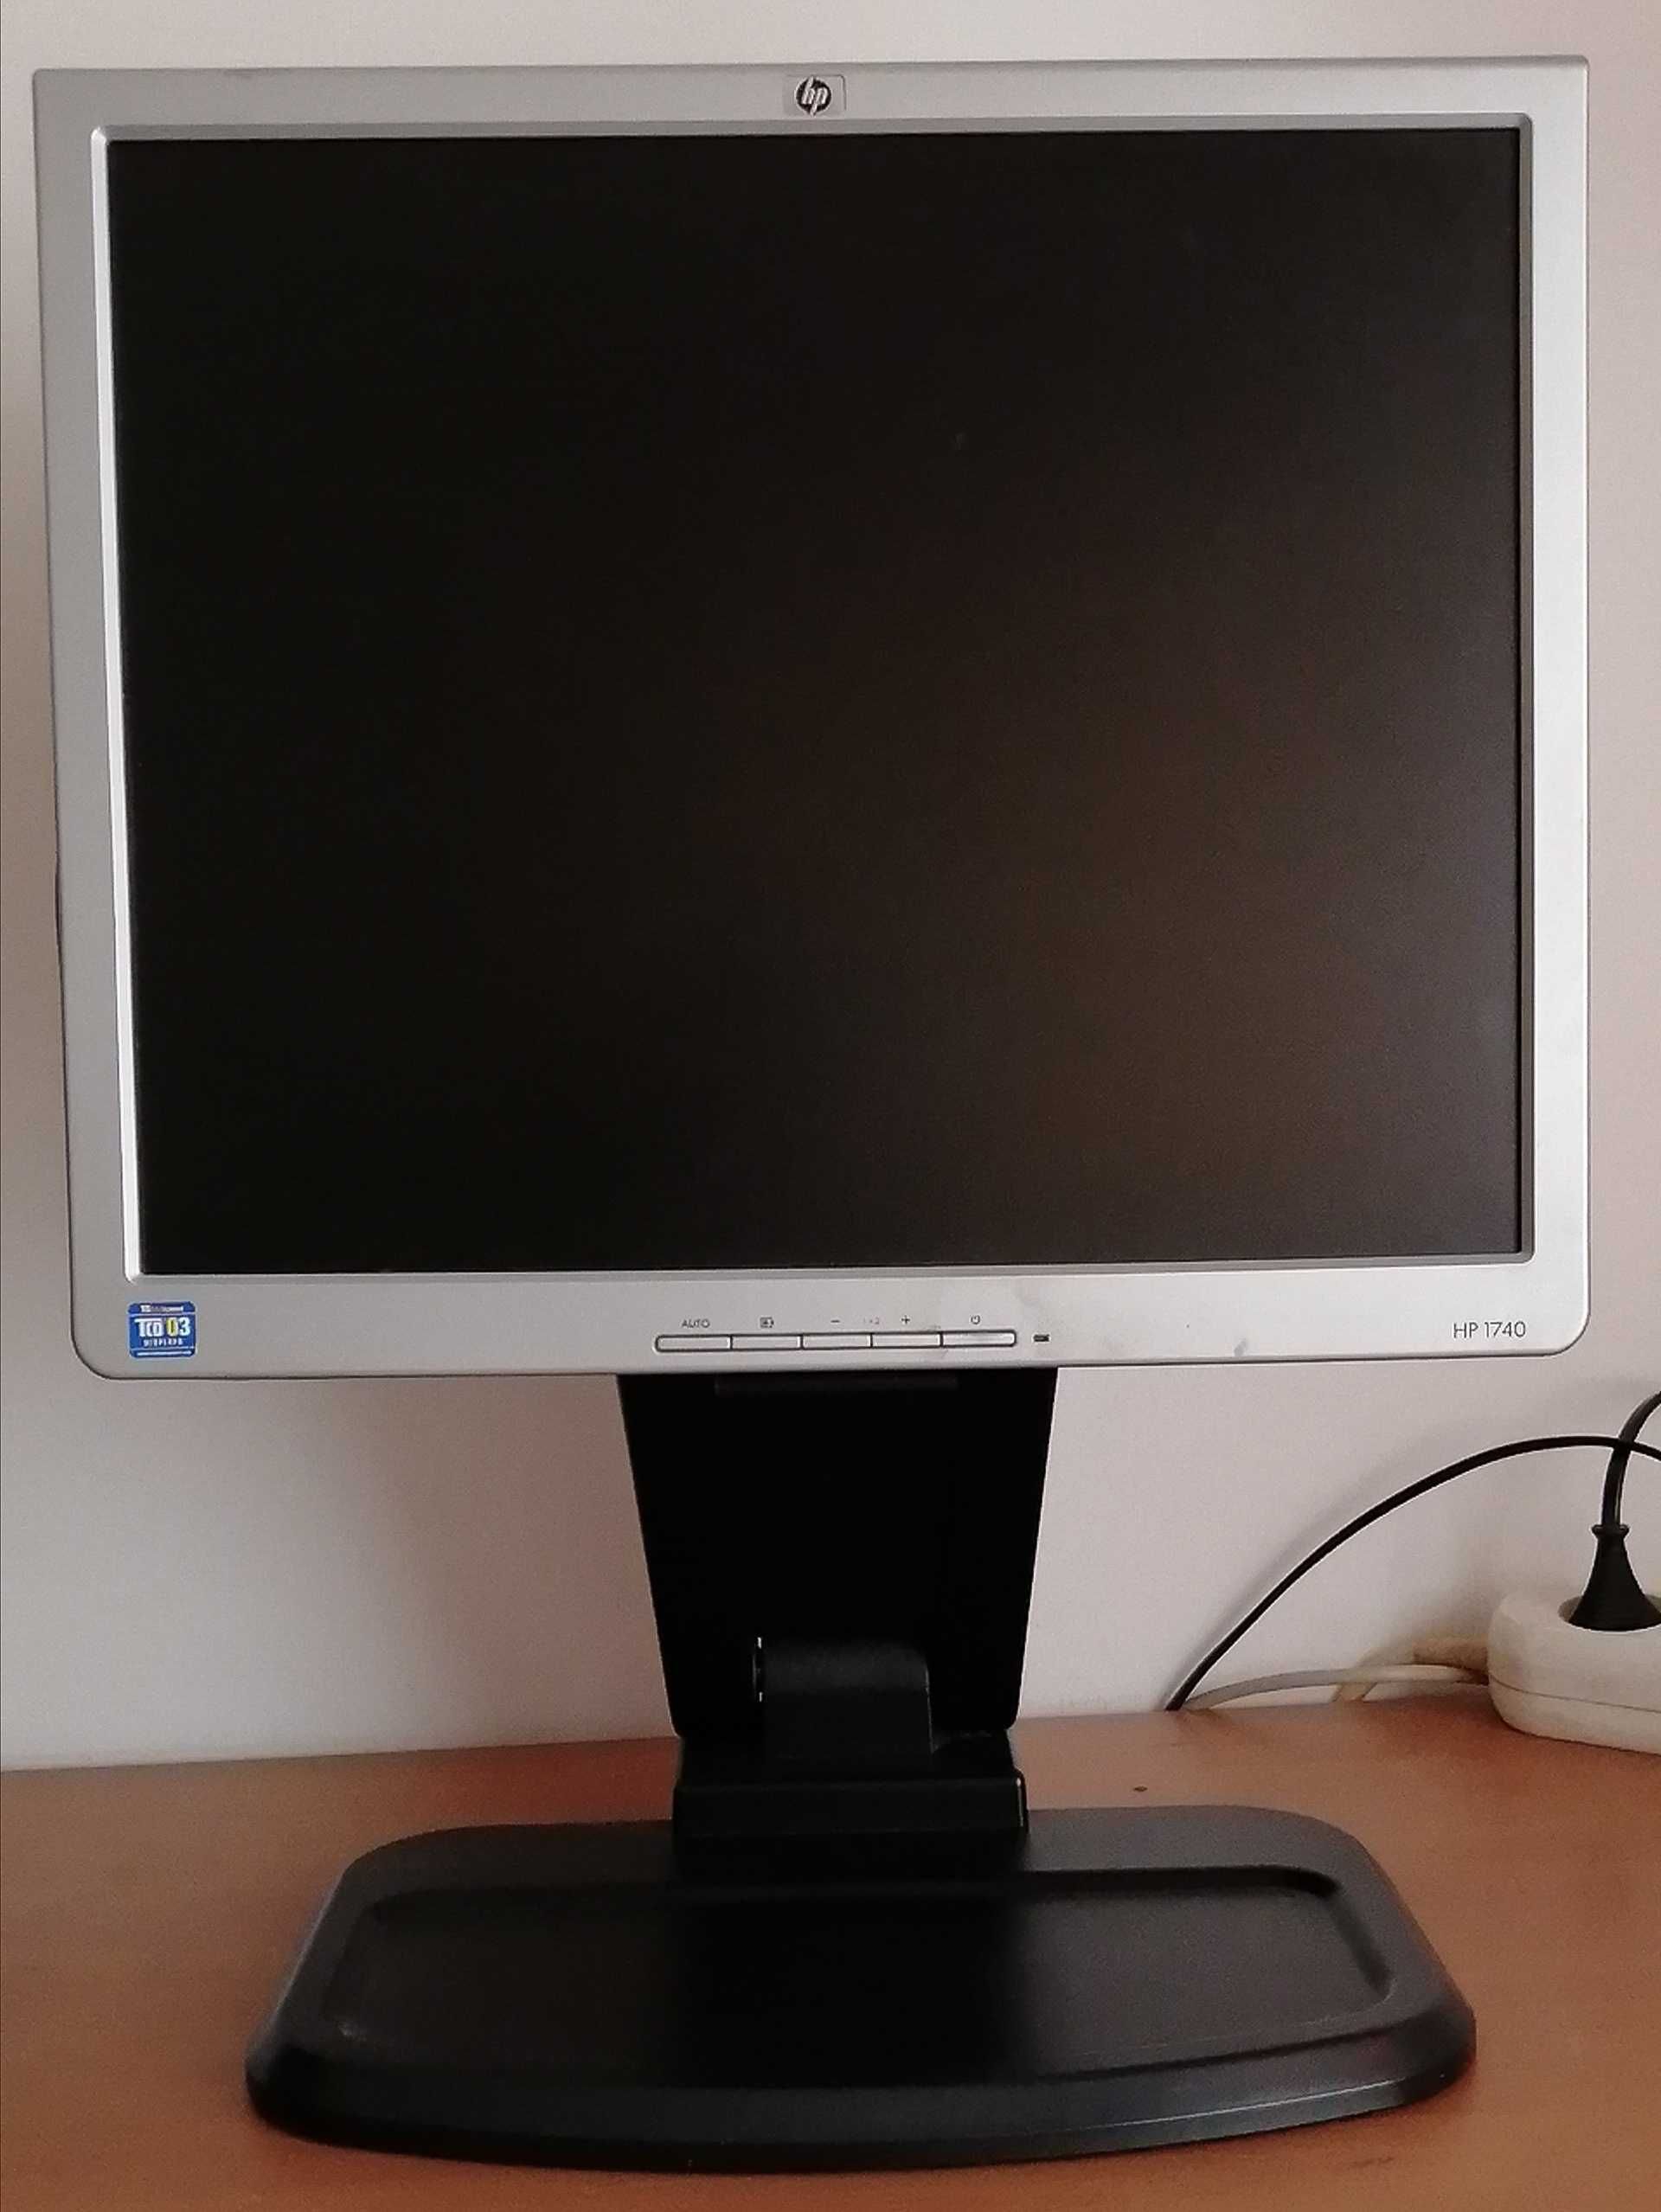 Ecrã / Monitor HP 1740